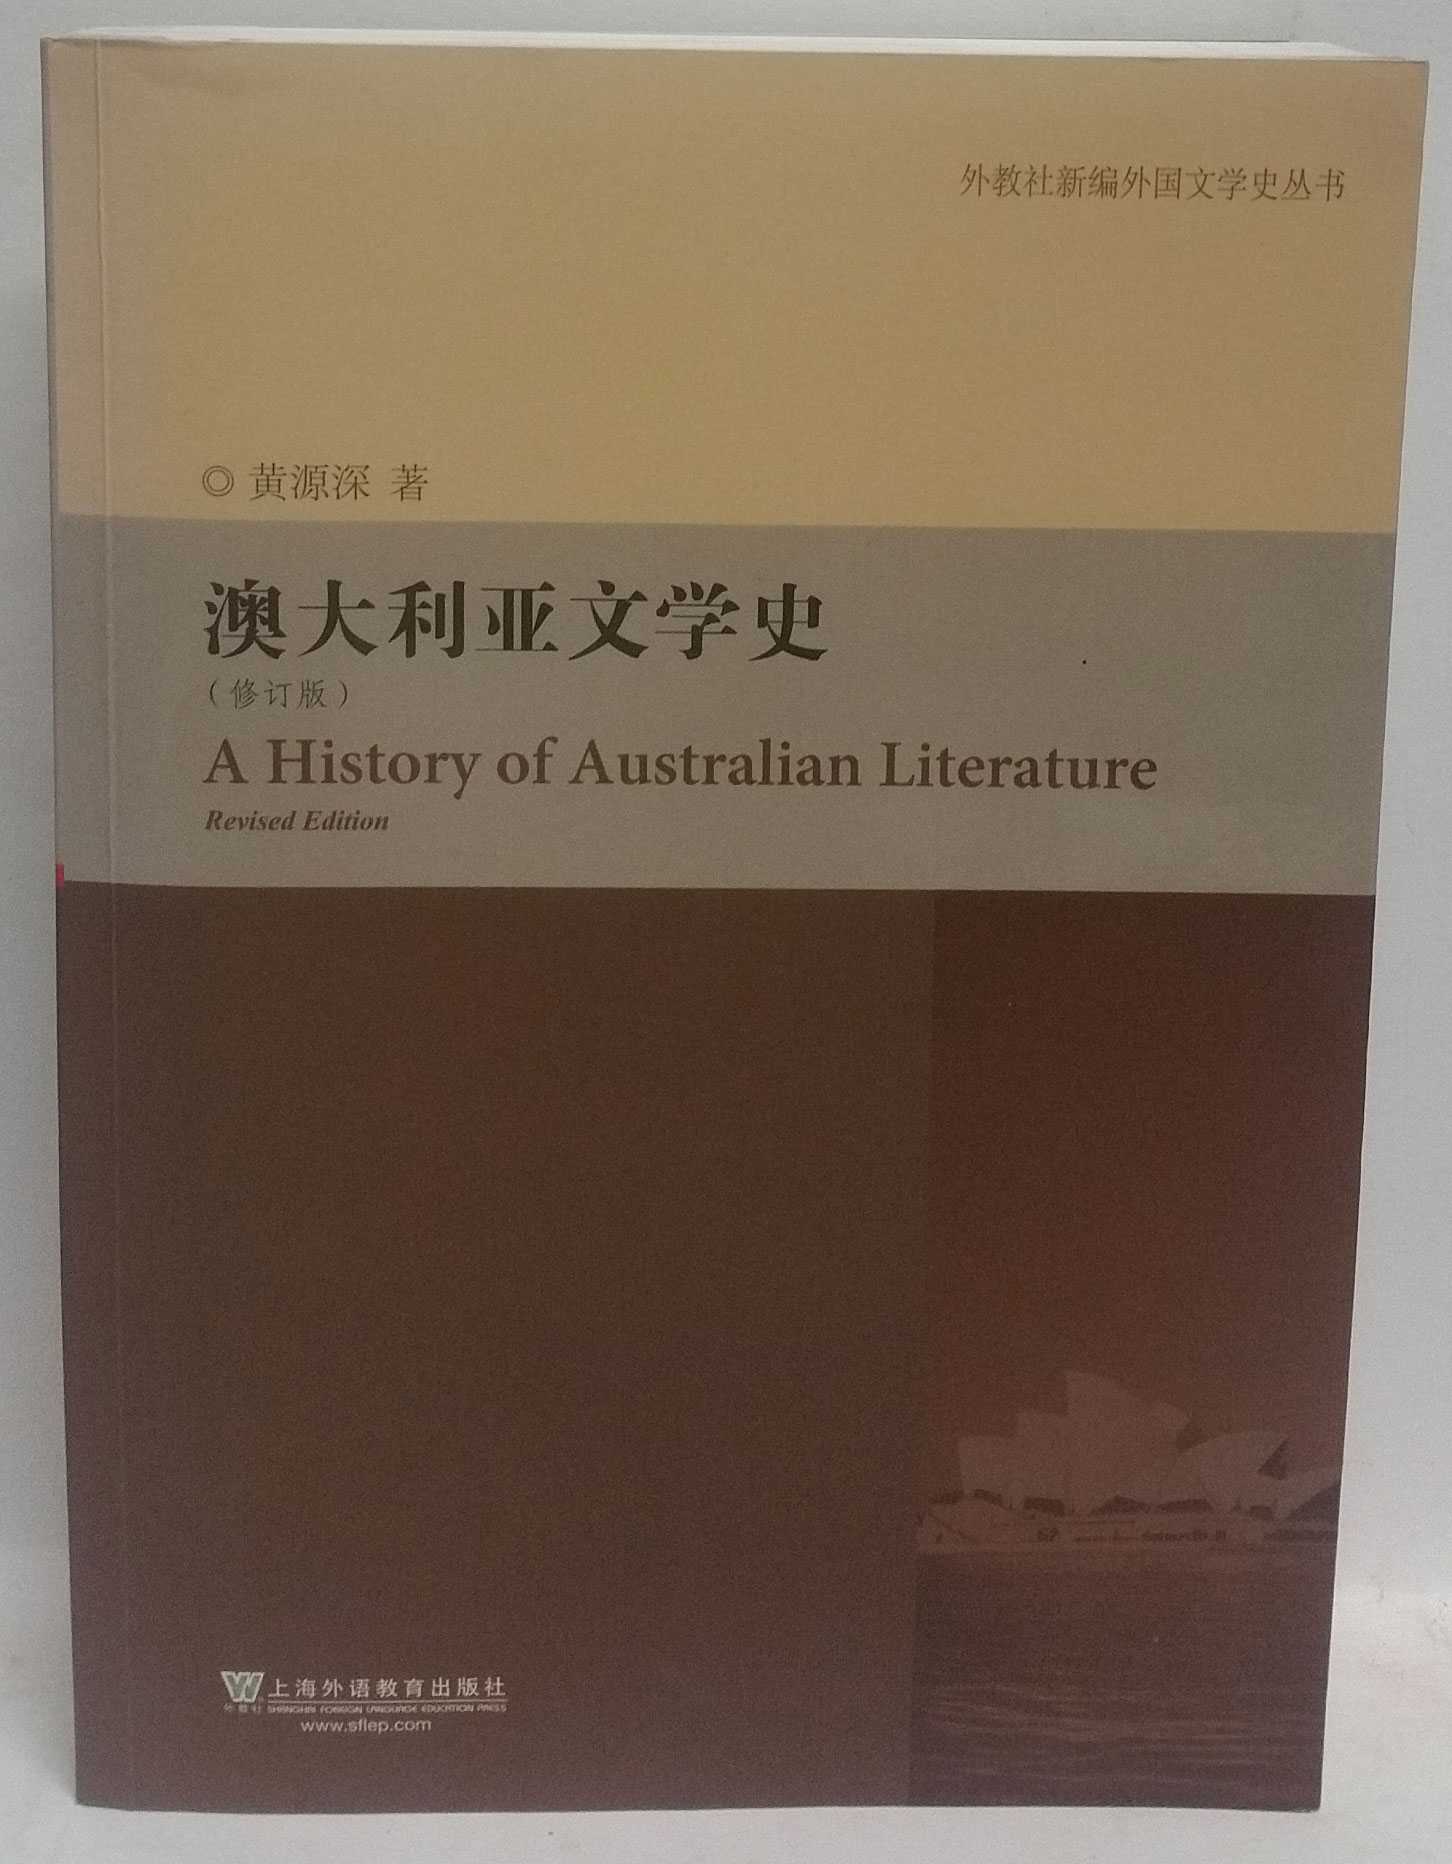 Yuanshen Huang - Aodaliya wen xue shi : xiu ding ban / A History of Australian Literature